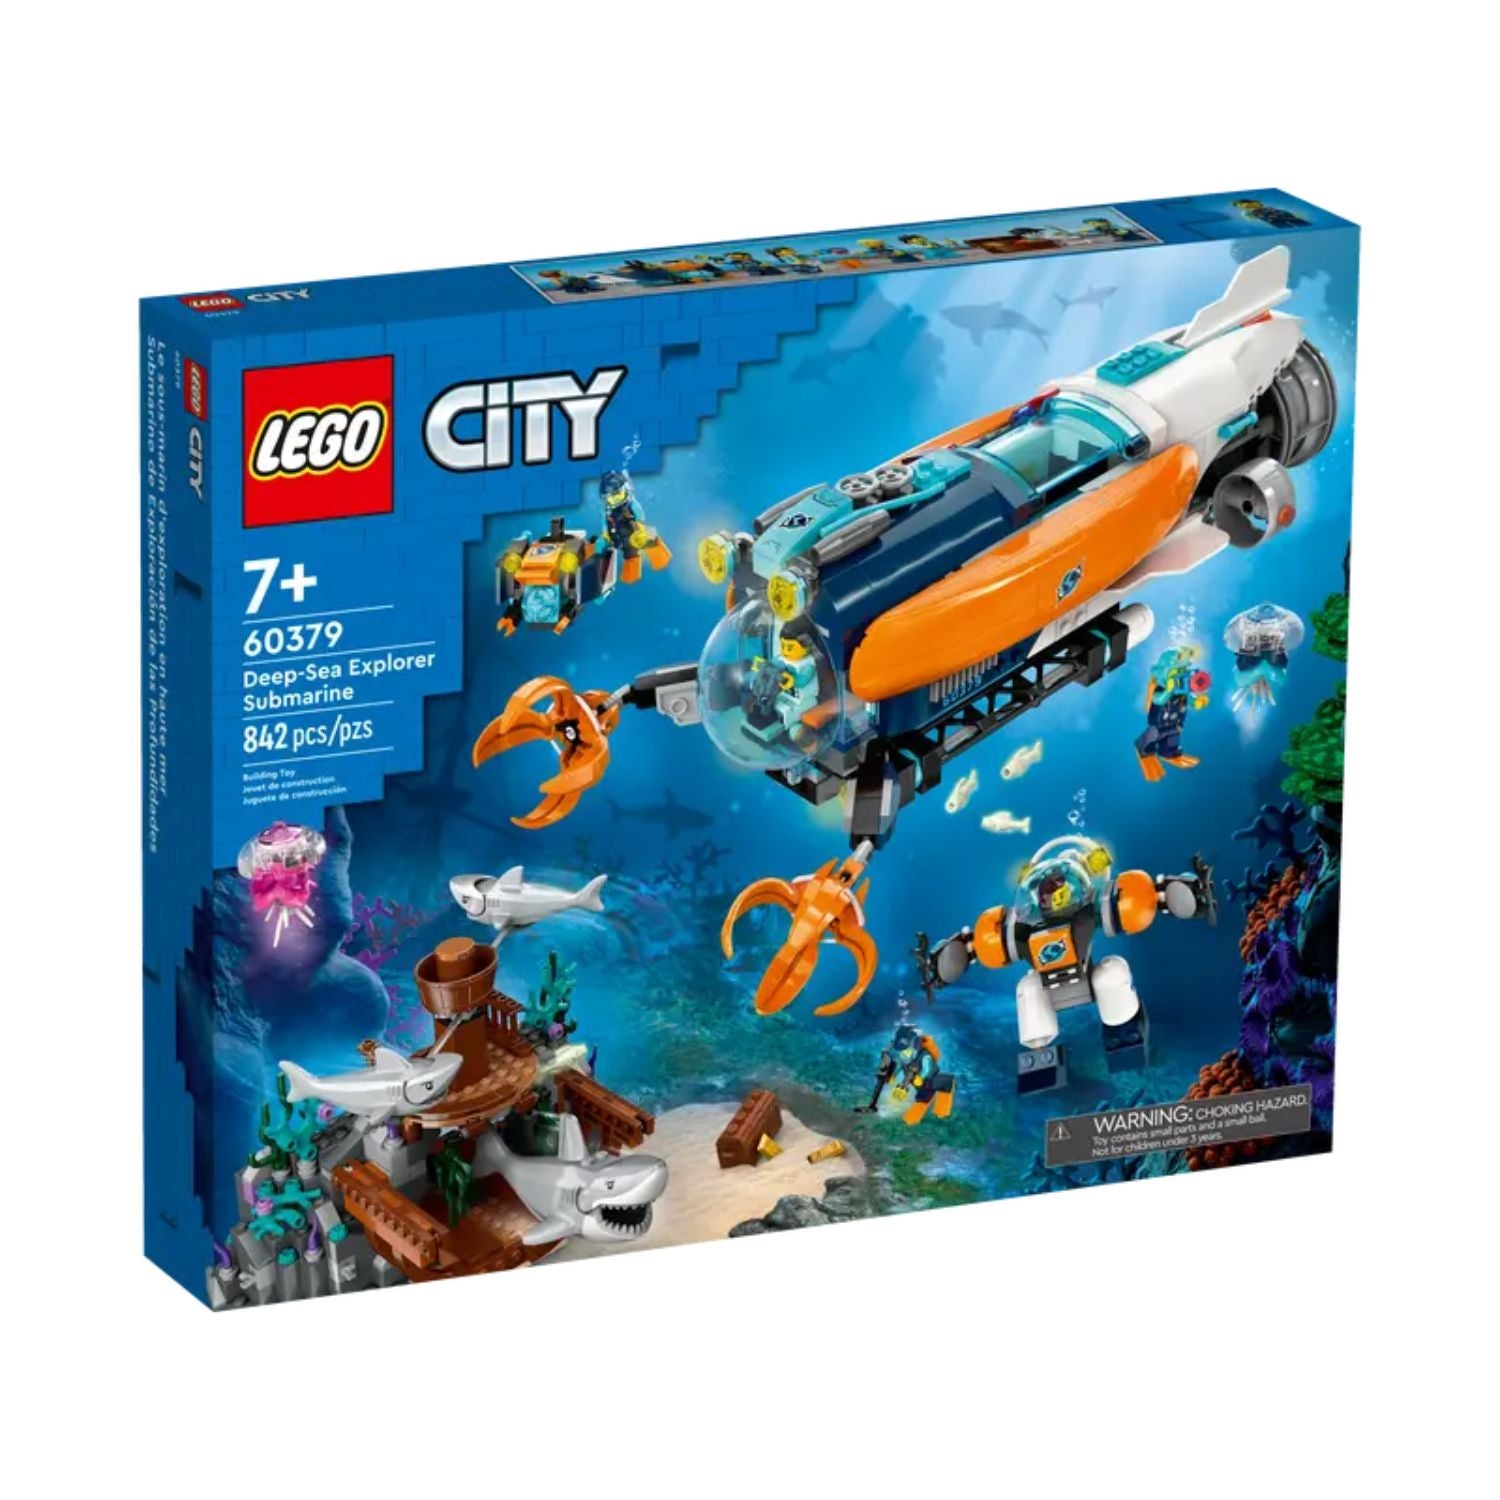 LEGO: cataloghi 2020 per Bambini e Migliori Offerte Online 